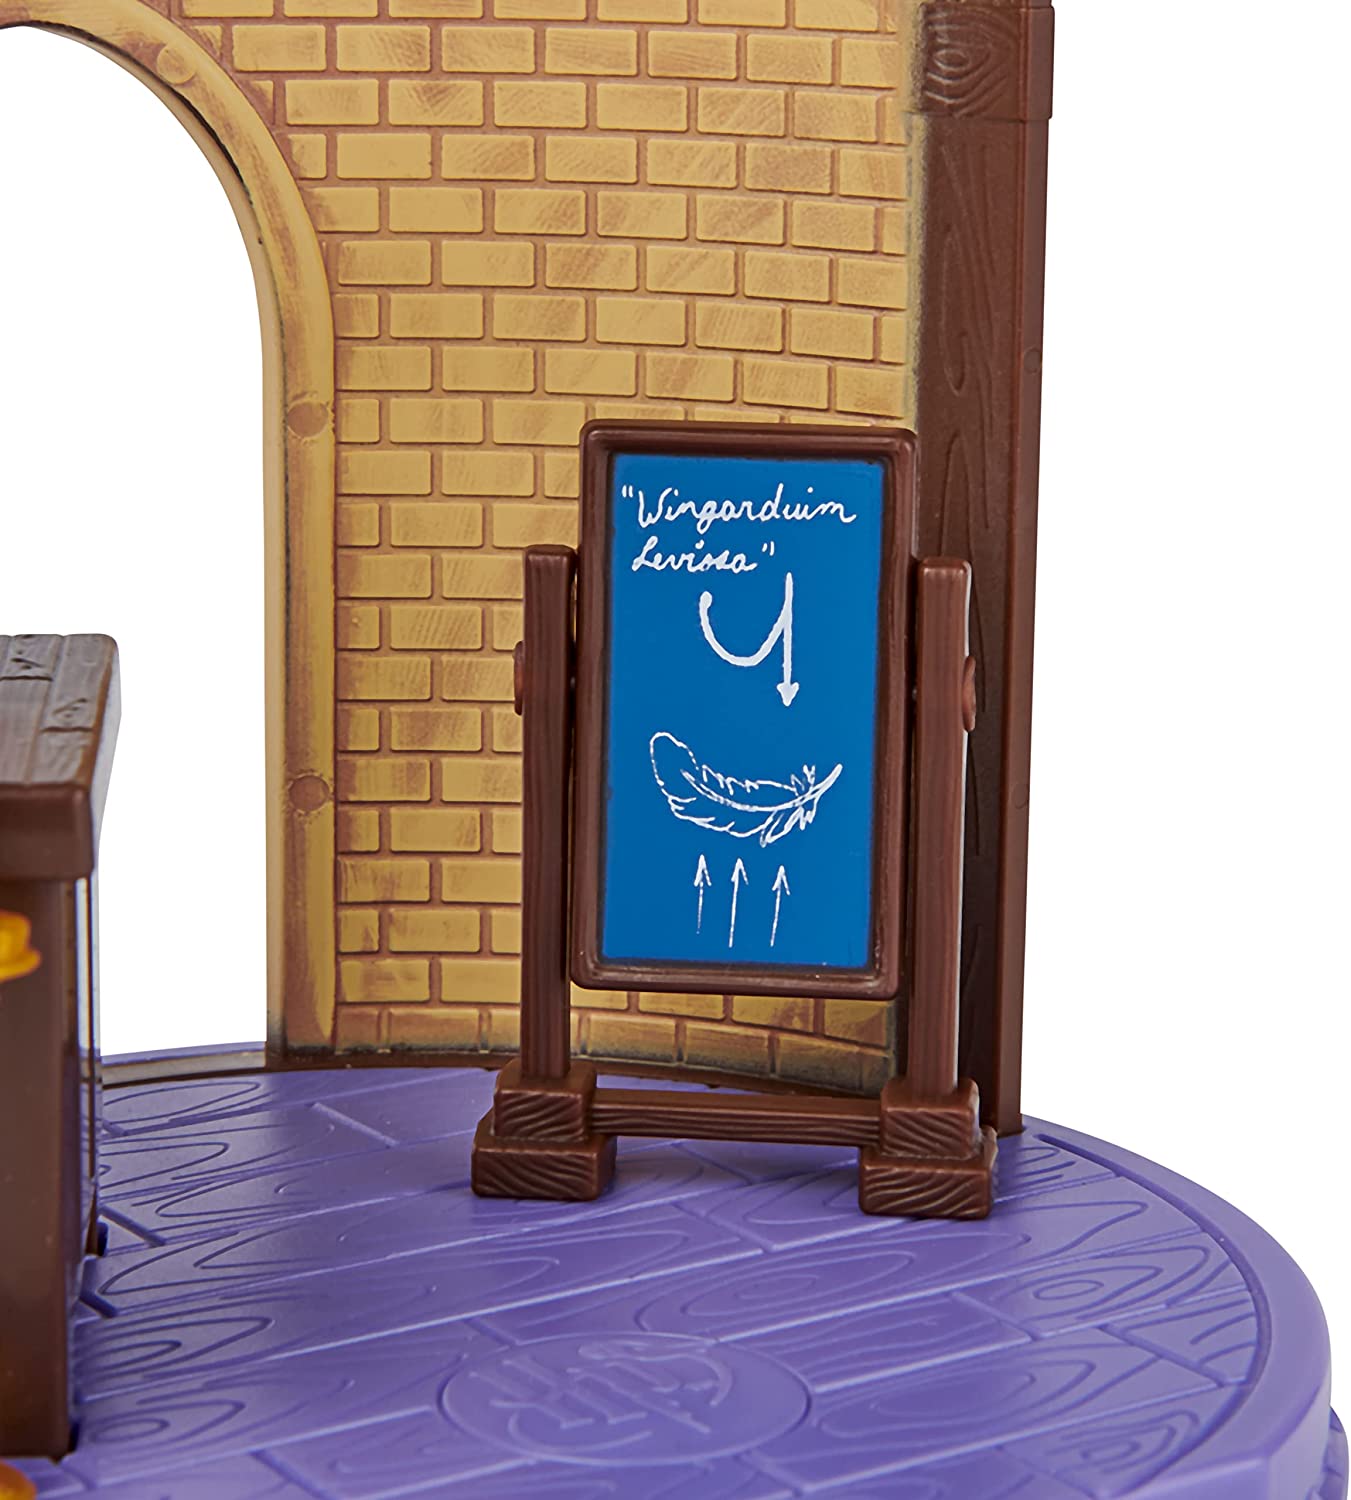 Playset Harry Potter Sala De Aula De Feitiços Sunny Brinquedos 4 Peças